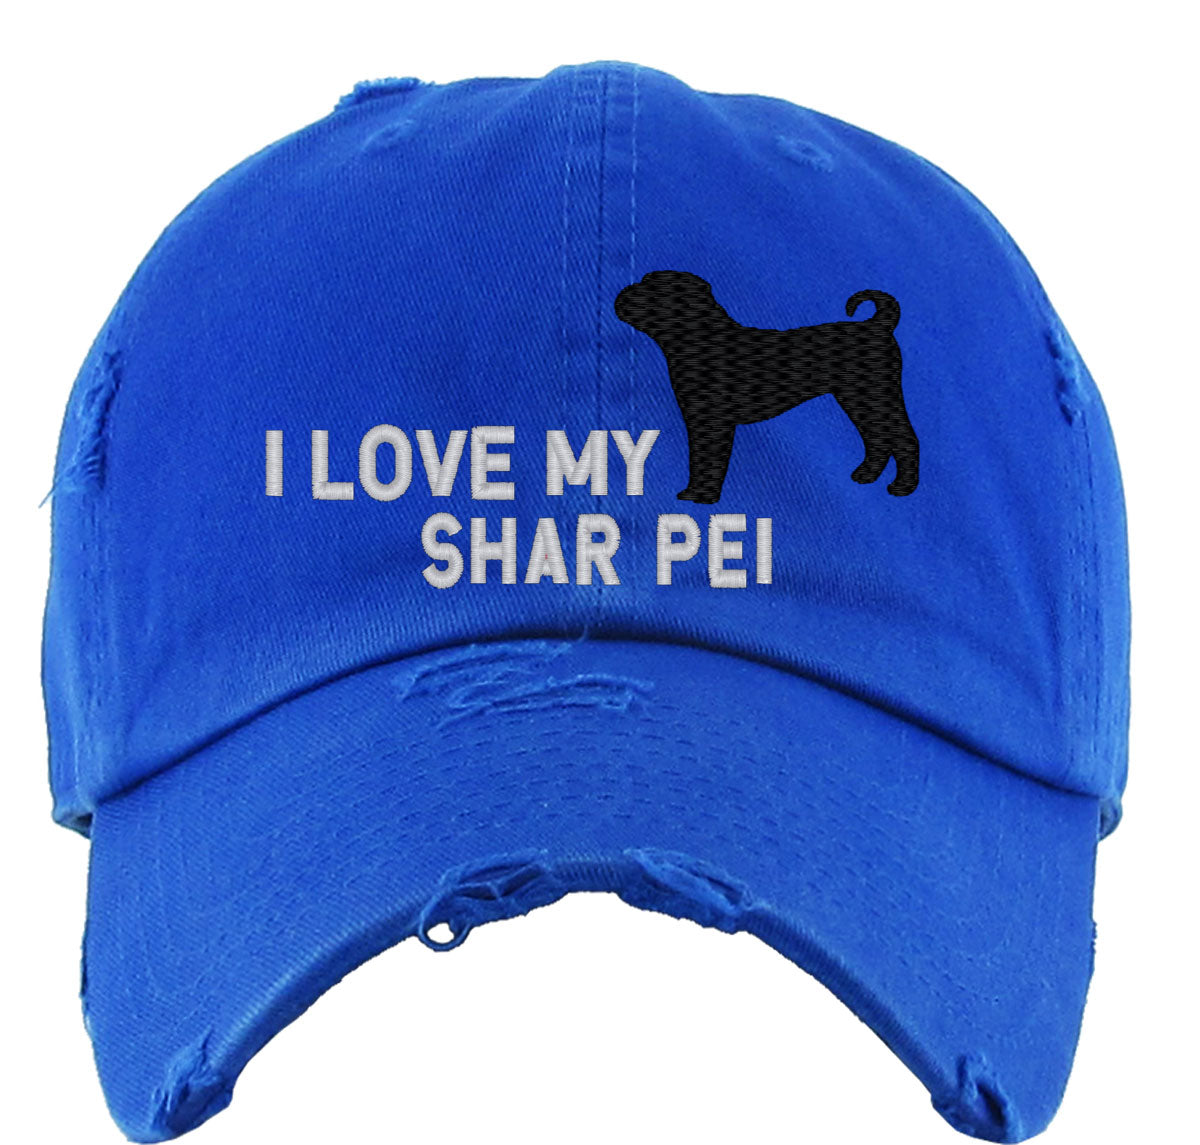 I Love My Shar Pei Dog Vintage Baseball Cap